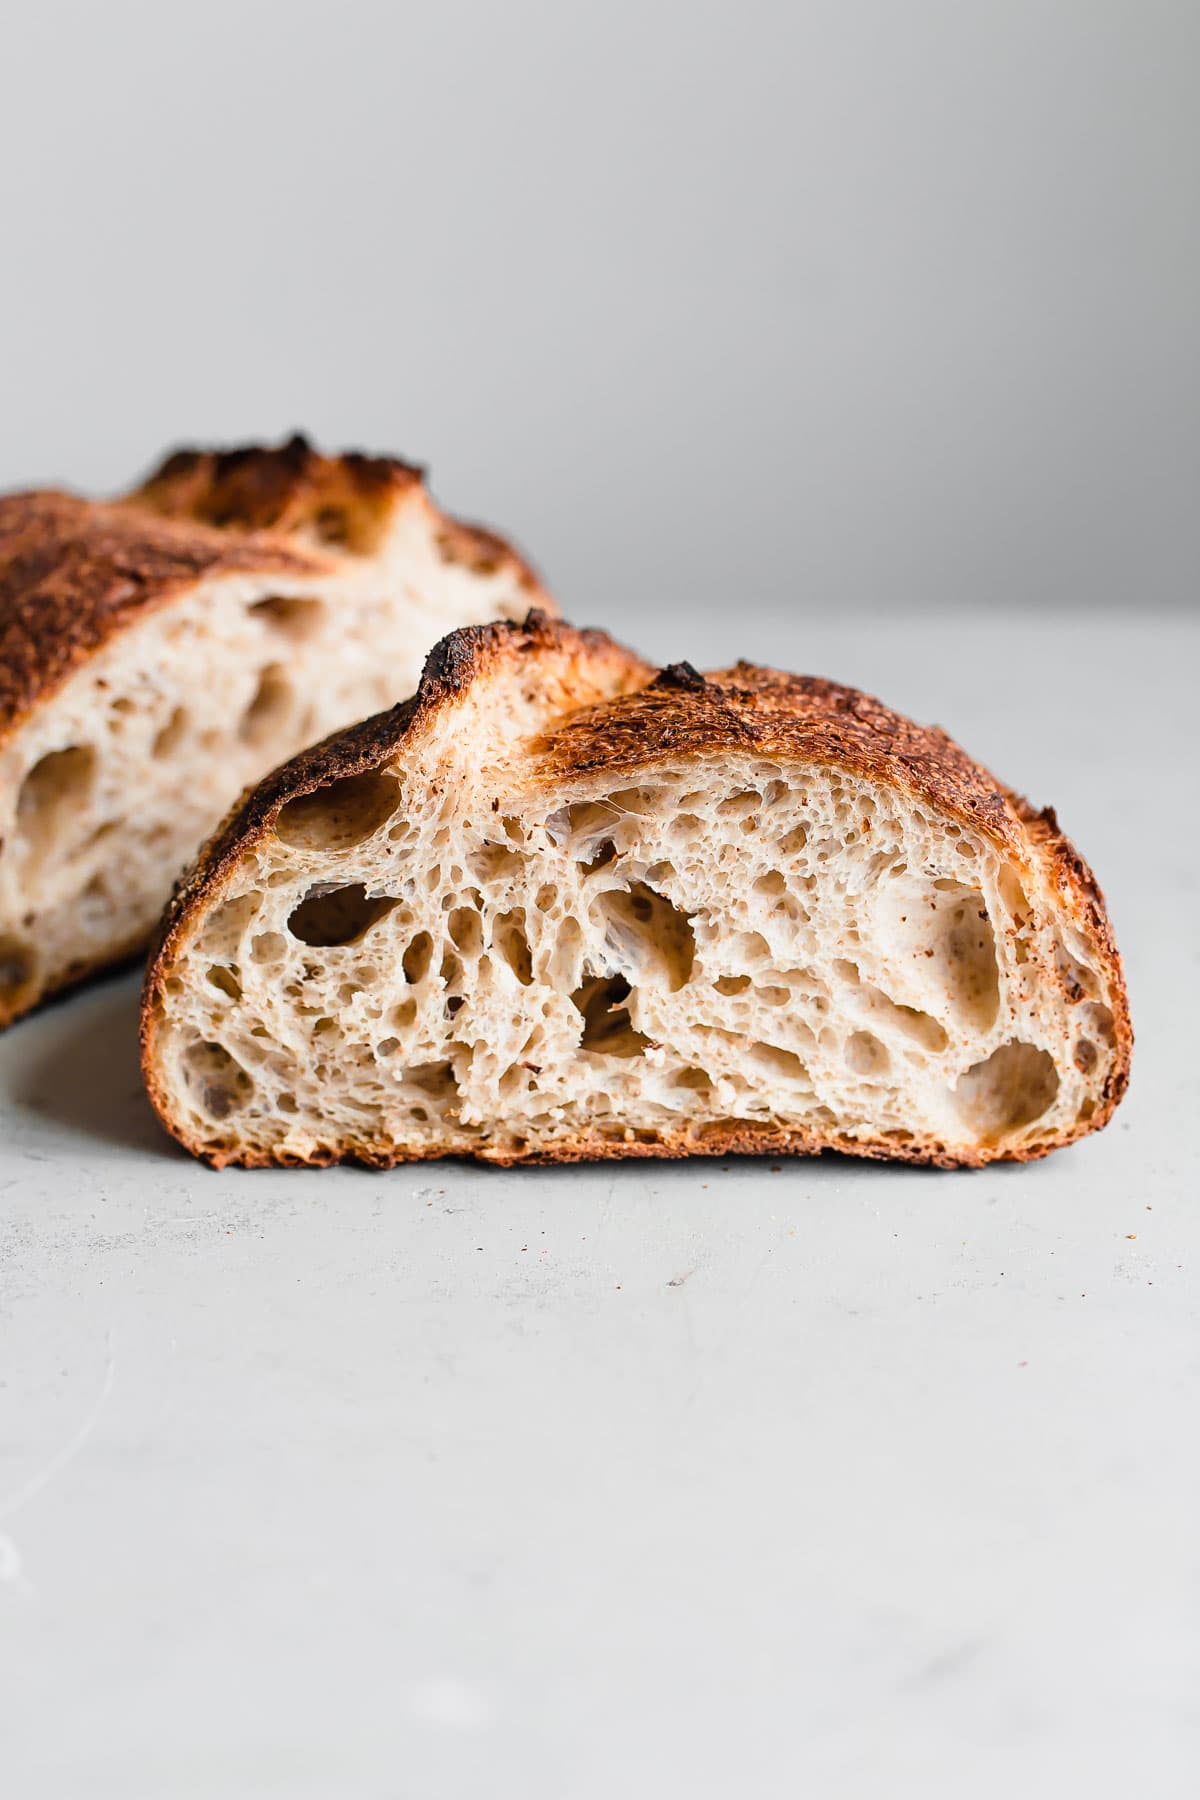 Baking sourdough bread in clay baker - Sourdough&Olives